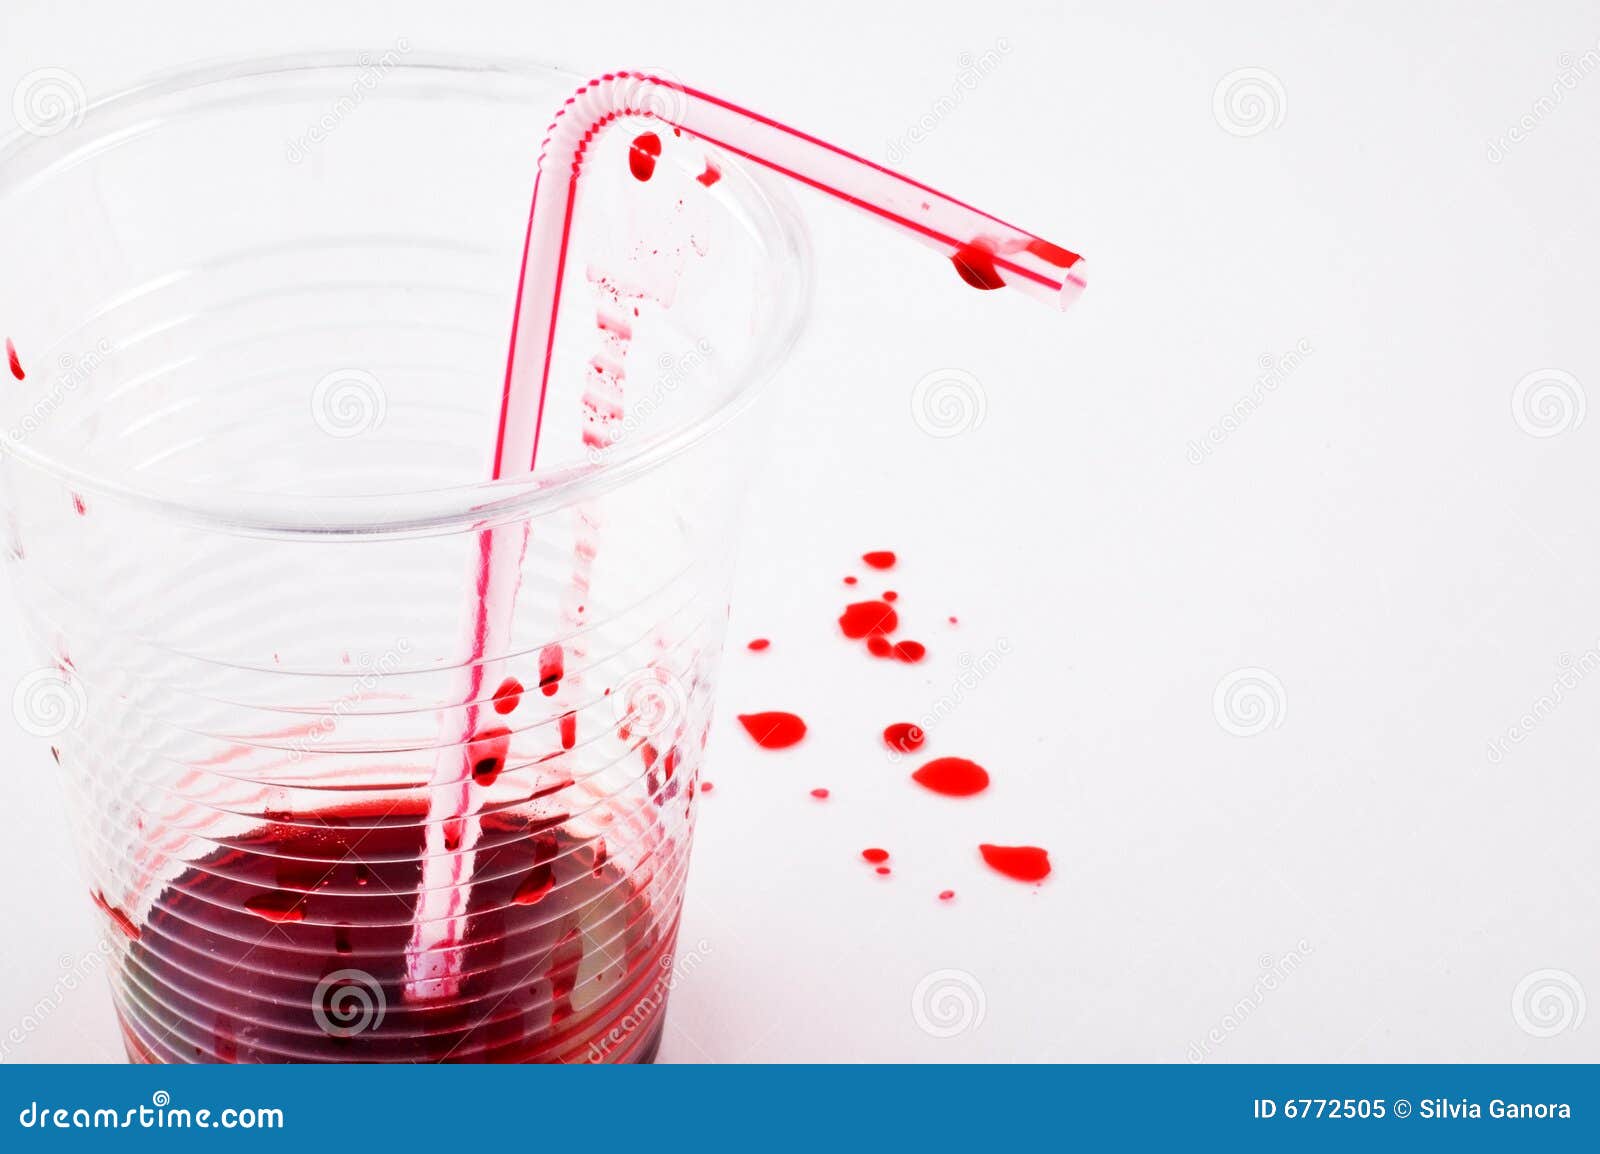 Как правильно пить кровь